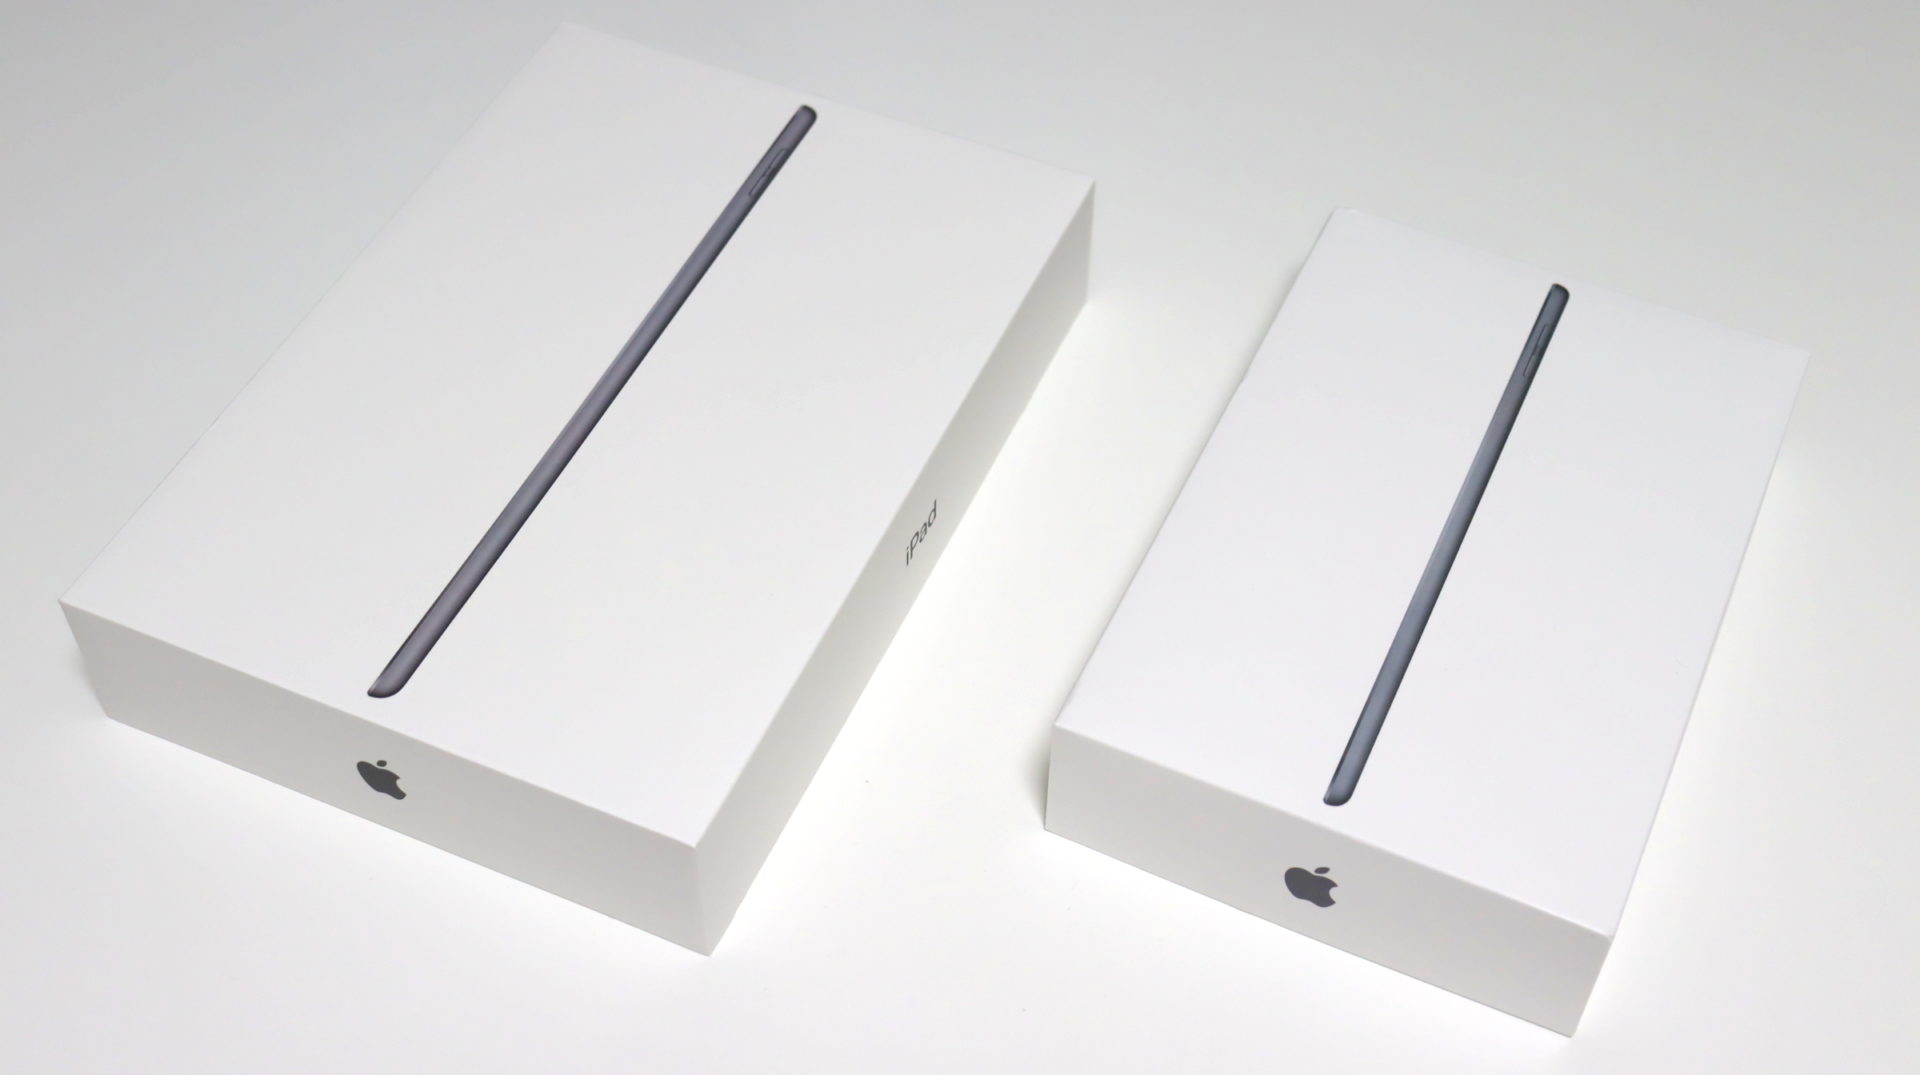 24000円 い出のひと時に、とびきりのおしゃれを！ iPad 第8世代 32GB 美品 中古 Wi-Fi シルバー A2270 10.2インチ 2020年 iPad8 本体 タブレット アイパッド アップル apple ipd8mtm2193